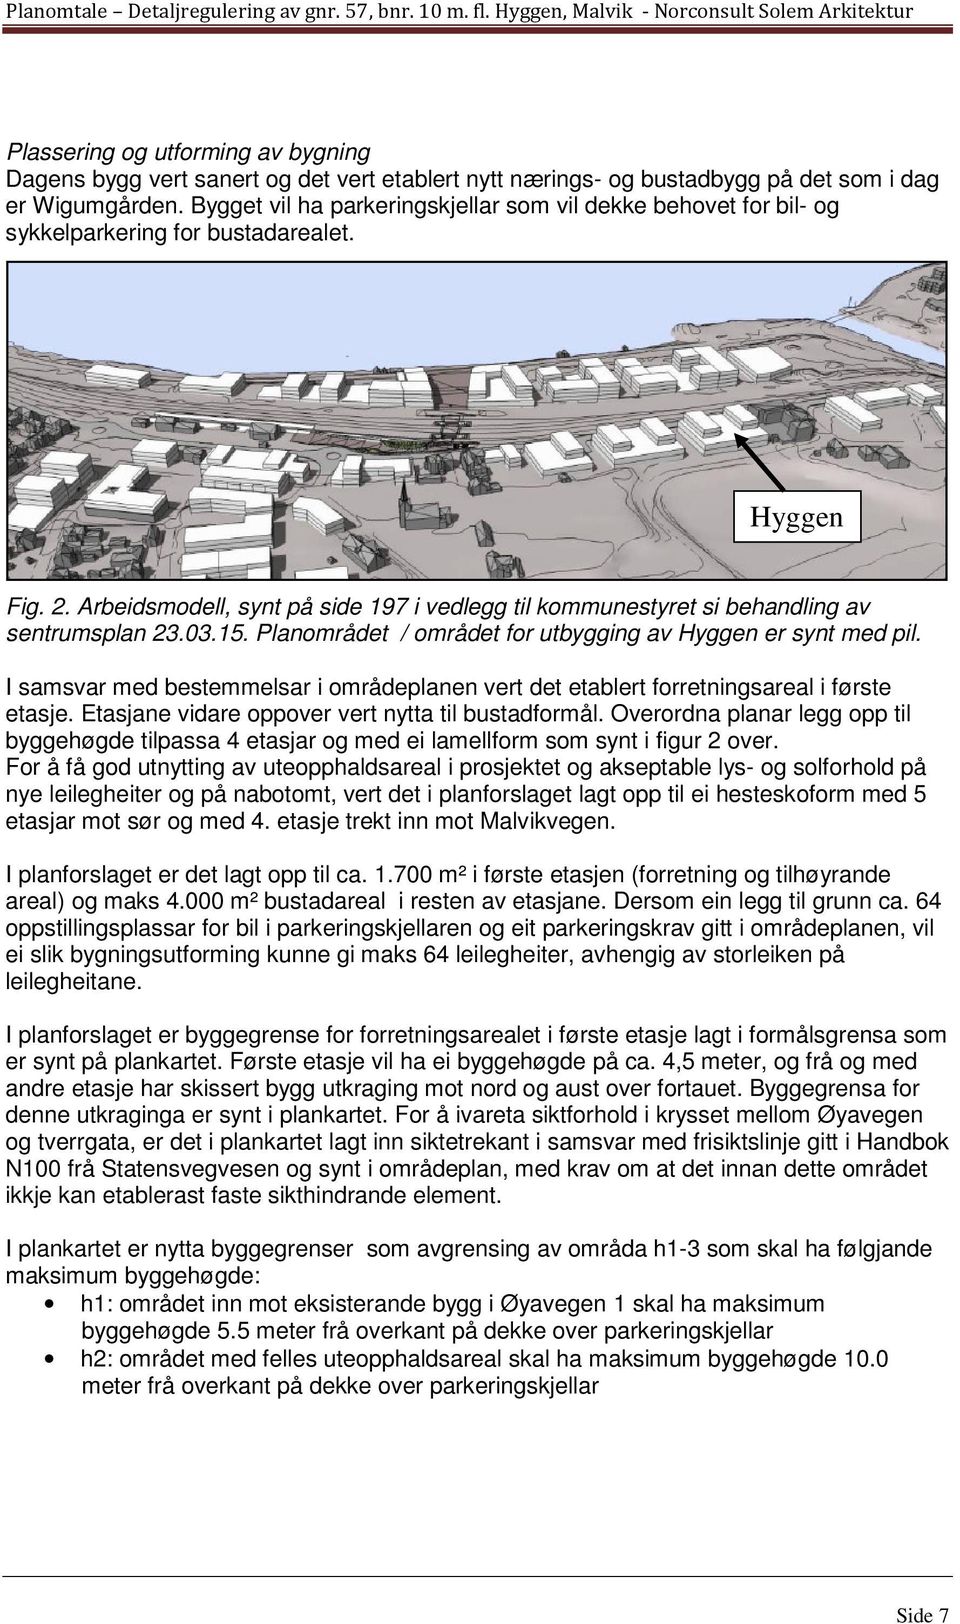 Arbeidsmodell, synt på side 197 i vedlegg til kommunestyret si behandling av sentrumsplan 23.03.15. Planområdet / området for utbygging av Hyggen er synt med pil.